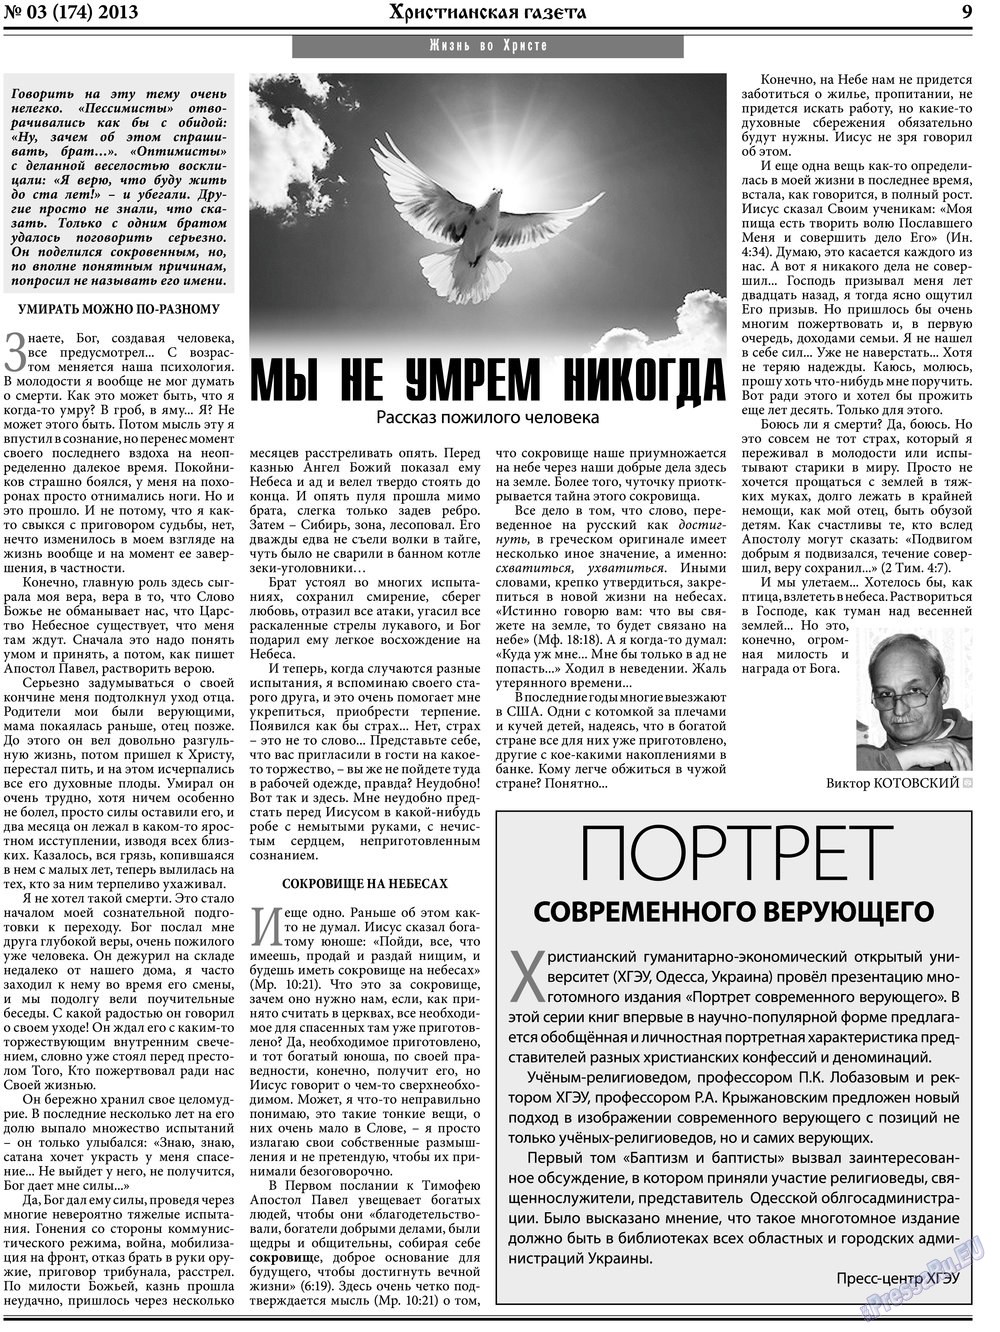 Христианская газета, газета. 2013 №3 стр.9